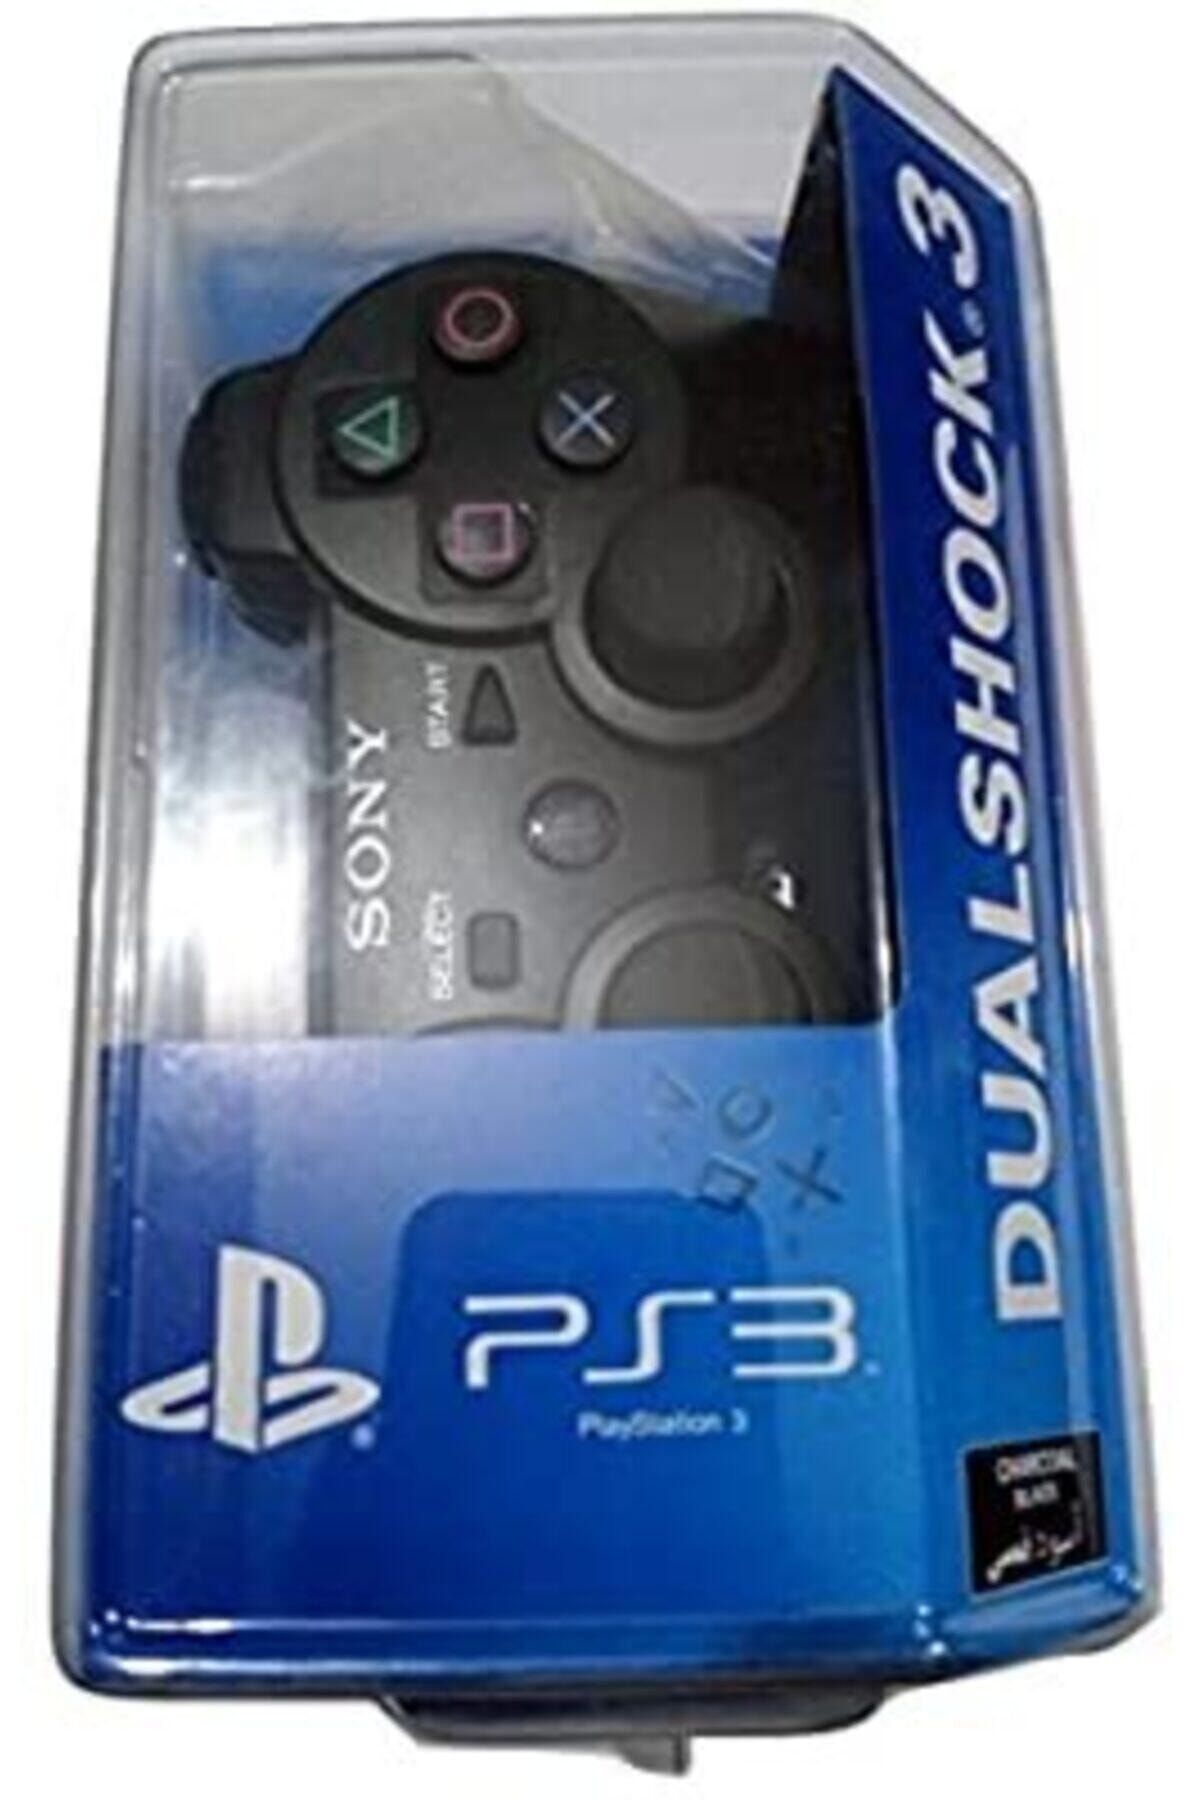 HERSEY TAHTAKALEDEN Sony Ps3 Dualshock 3 Kablosuz Oyun Kolu